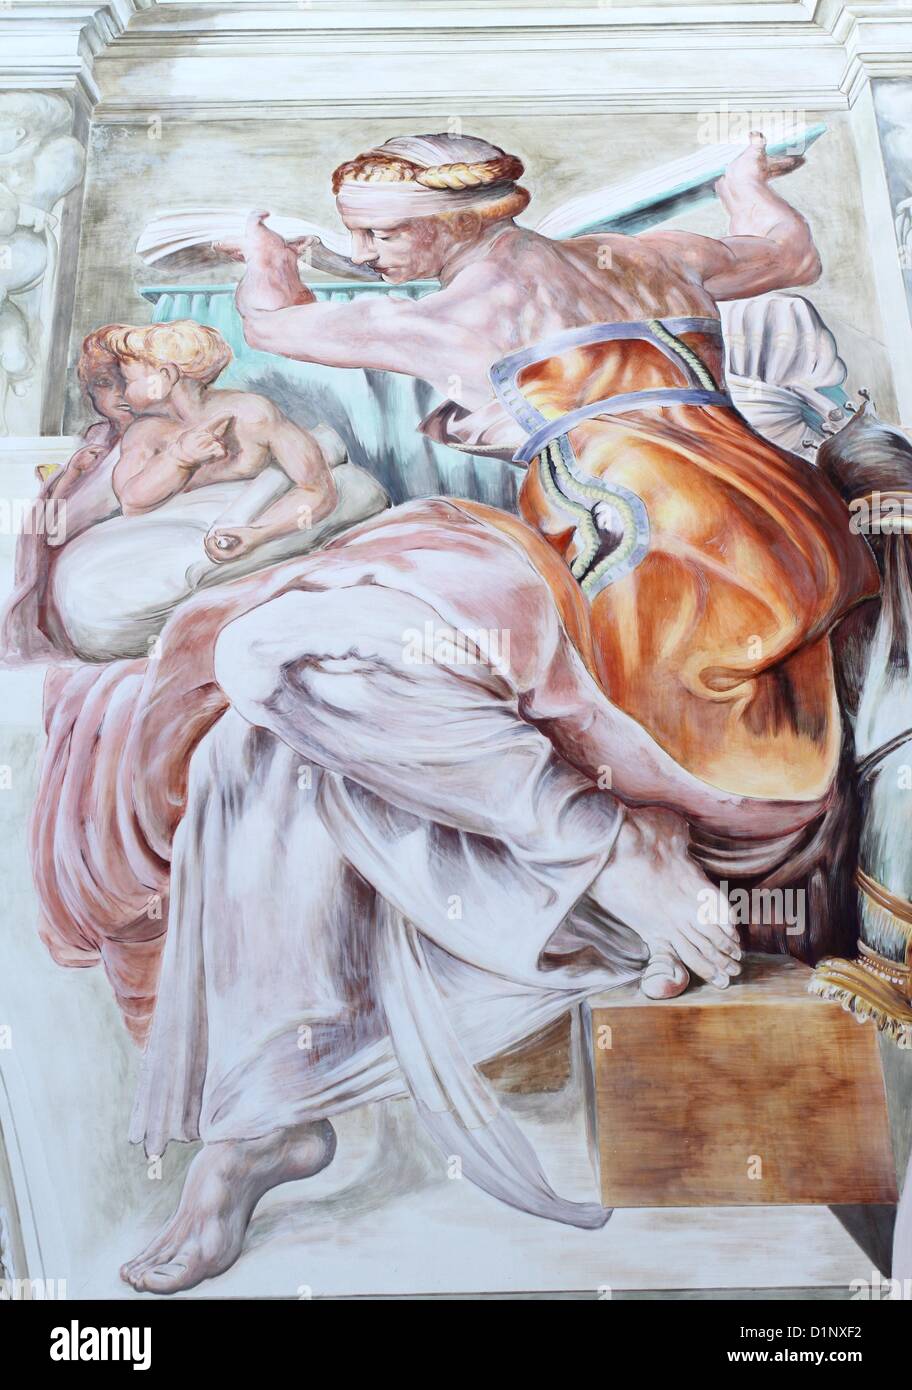 Bedford, UK. 1. Januar 2013. Michelangelos berühmte libysche Sibylle, normalerweise gesehen in der Sixtinischen Kapelle des Vatikans, hat jetzt eine ziemlich große Kopie - auf der Seite ein Café in Bedford.  Kevin Kavanagh, Besitzer des "Fresken" in der Stadt Mill Street beauftragte lokale Künstler Iain Carstairs, 115 qm Fresko Kunstwerk Ikone aus dem 16. Jahrhundert zu schaffen, kostet ca. £30.000 abgeschlossen hat.  Iain dauerte zwei Monate das beeindruckende Wandgemälde, die malte er vom Gerüst rund um das Café. Stockfoto